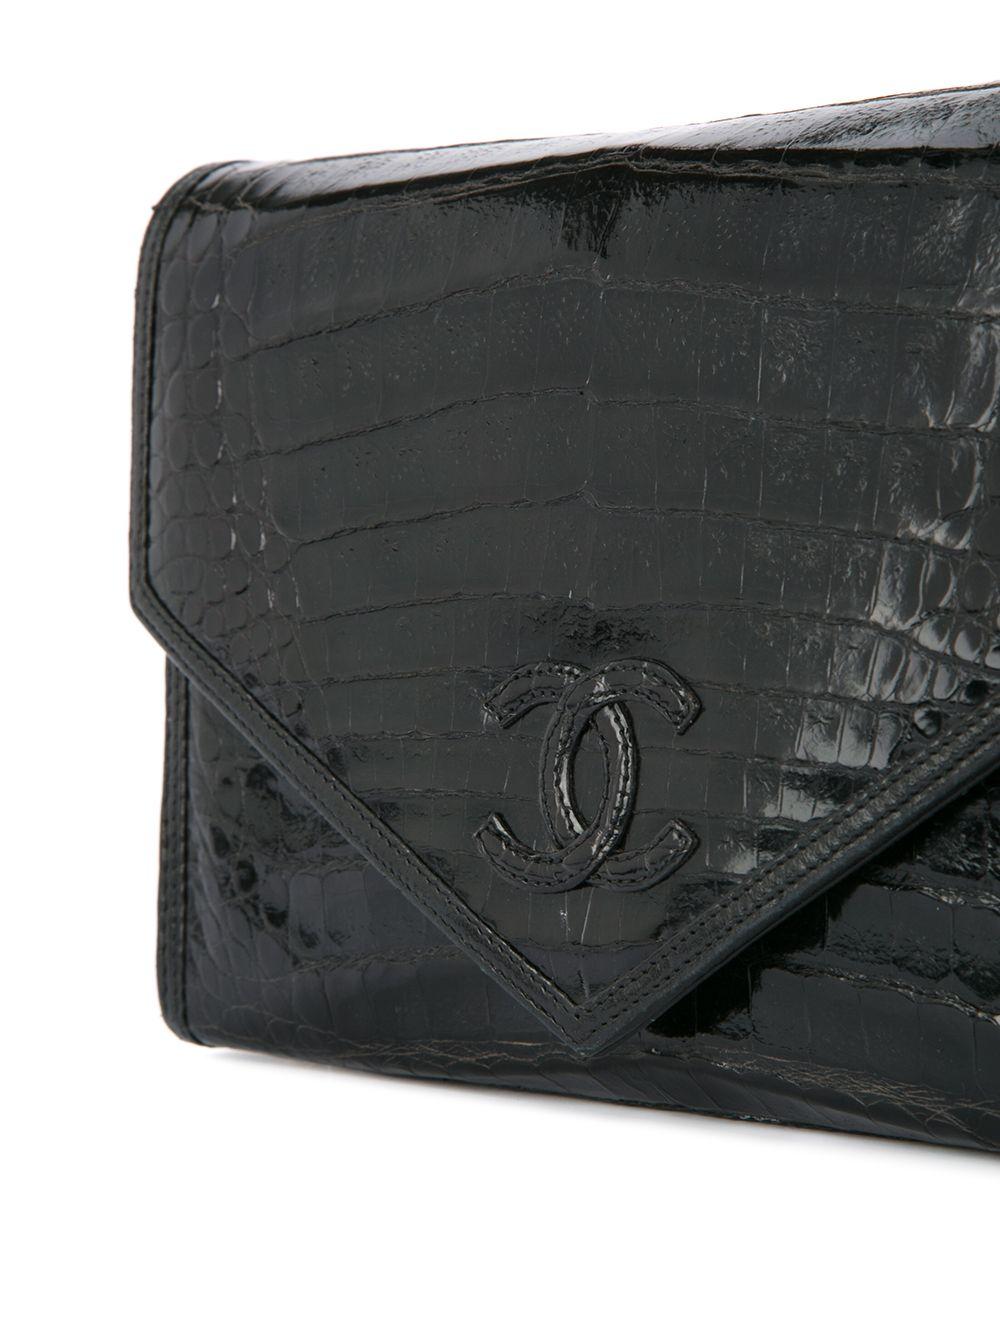 Women's or Men's Chanel 1980's Black Classic Crocodile Envelope CC Flap Bag Convertible Clutch  For Sale